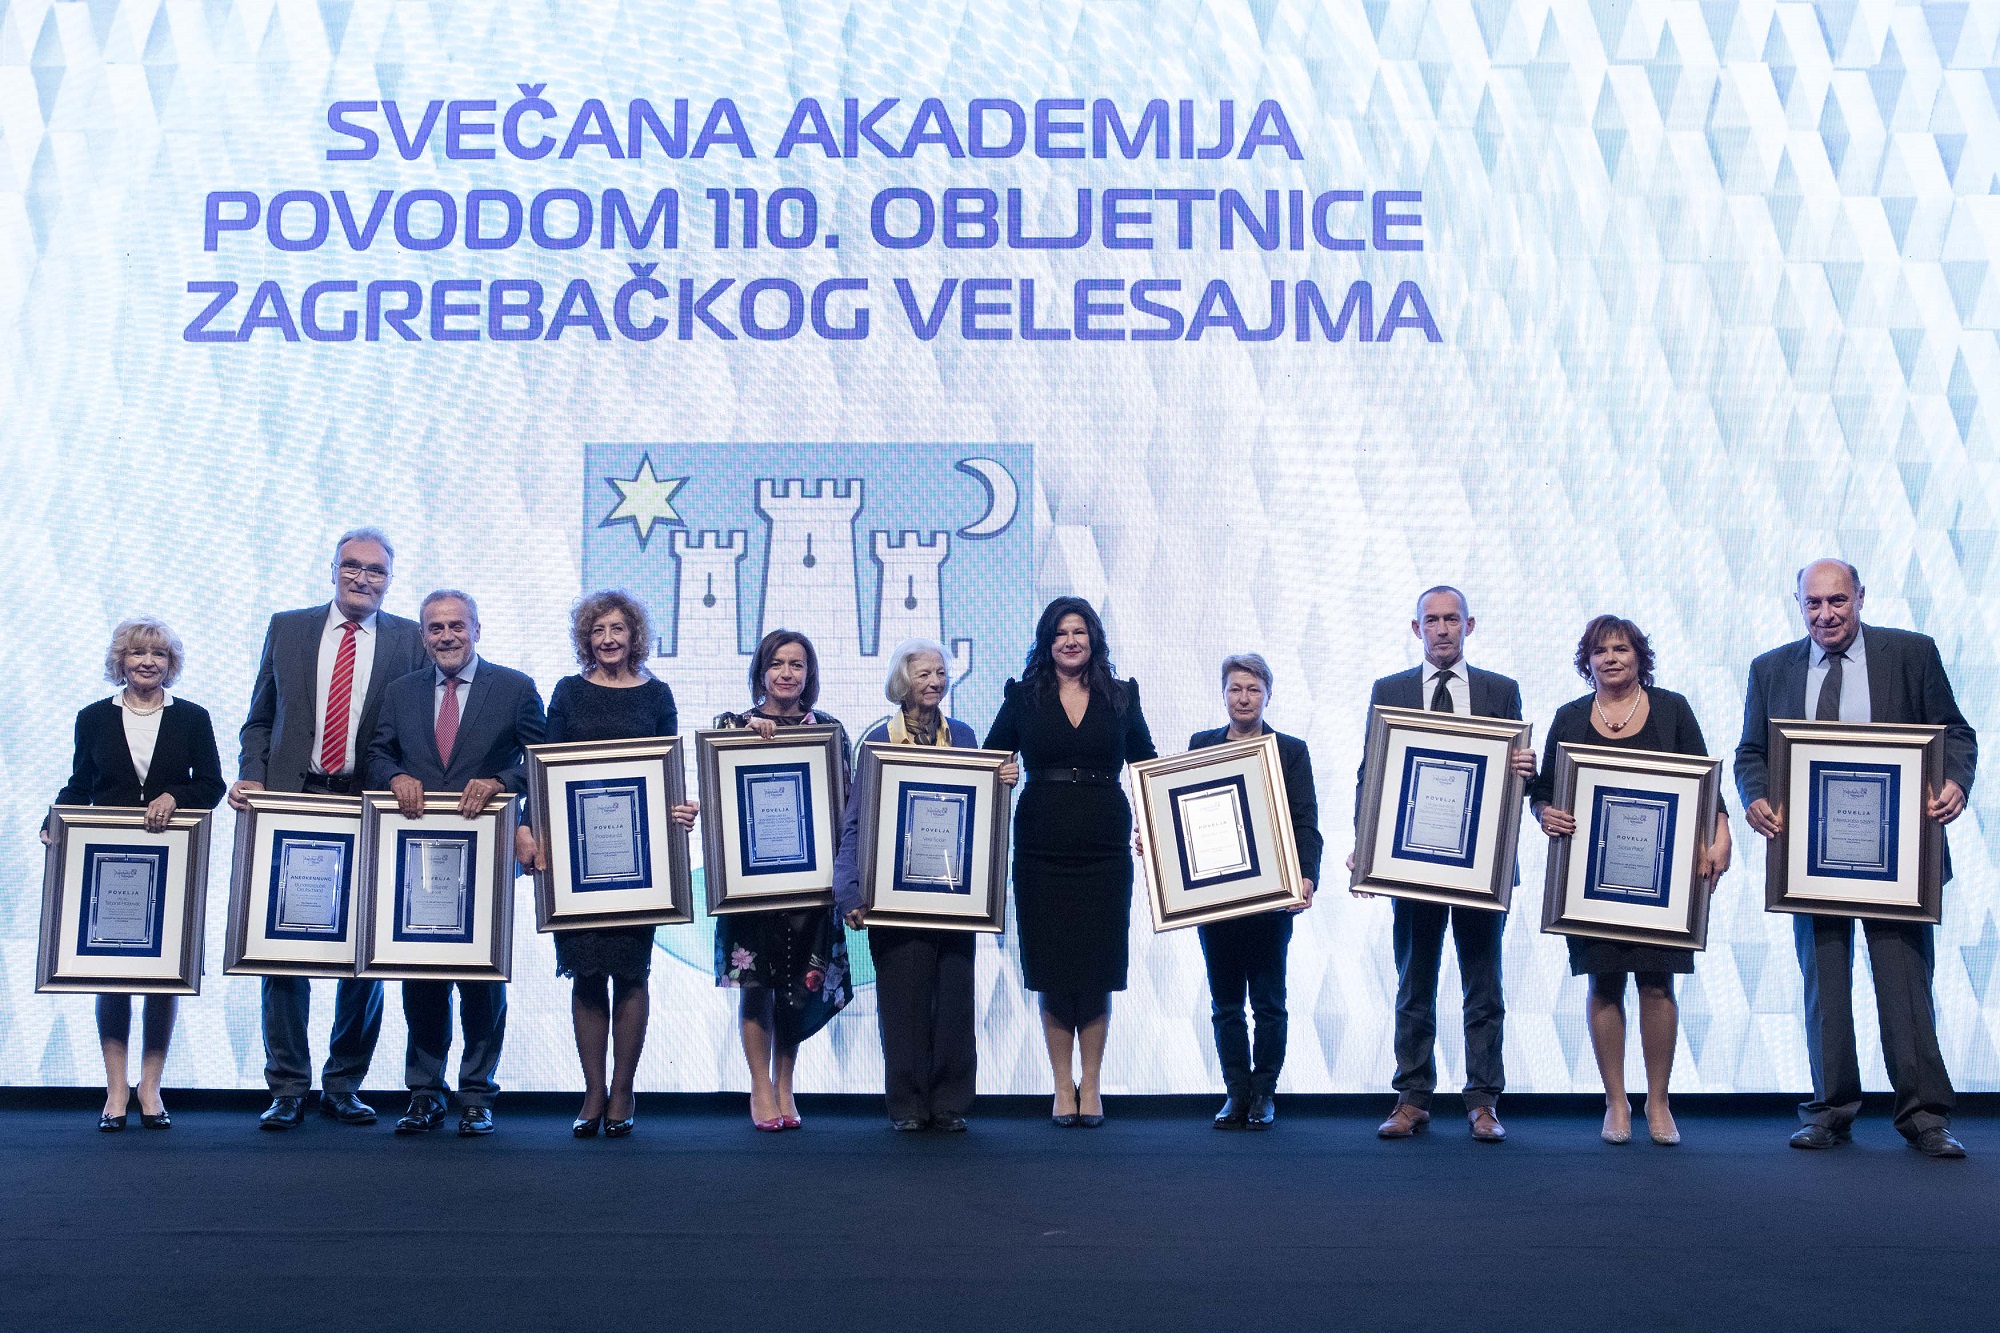 14.11.2019. 110 godina Zagrebackog Velesajma, foto sasa cetkovic